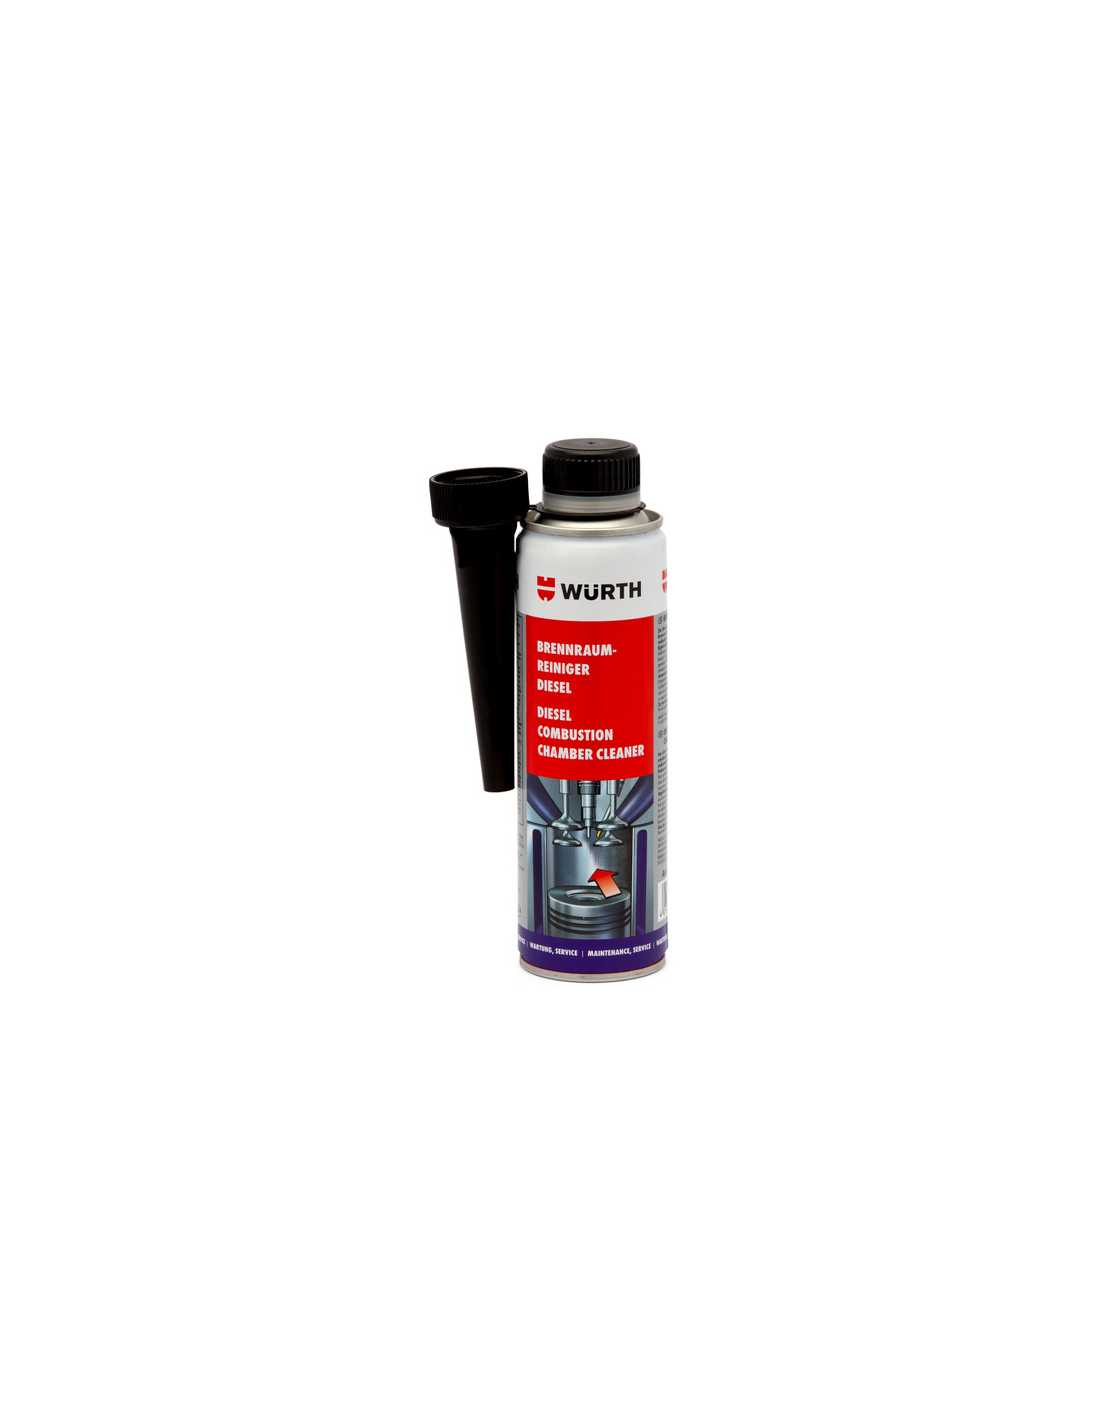 STP Limpiador de inyectores de diésel antihumos PRE ITV + Anti-humos (400  ml)